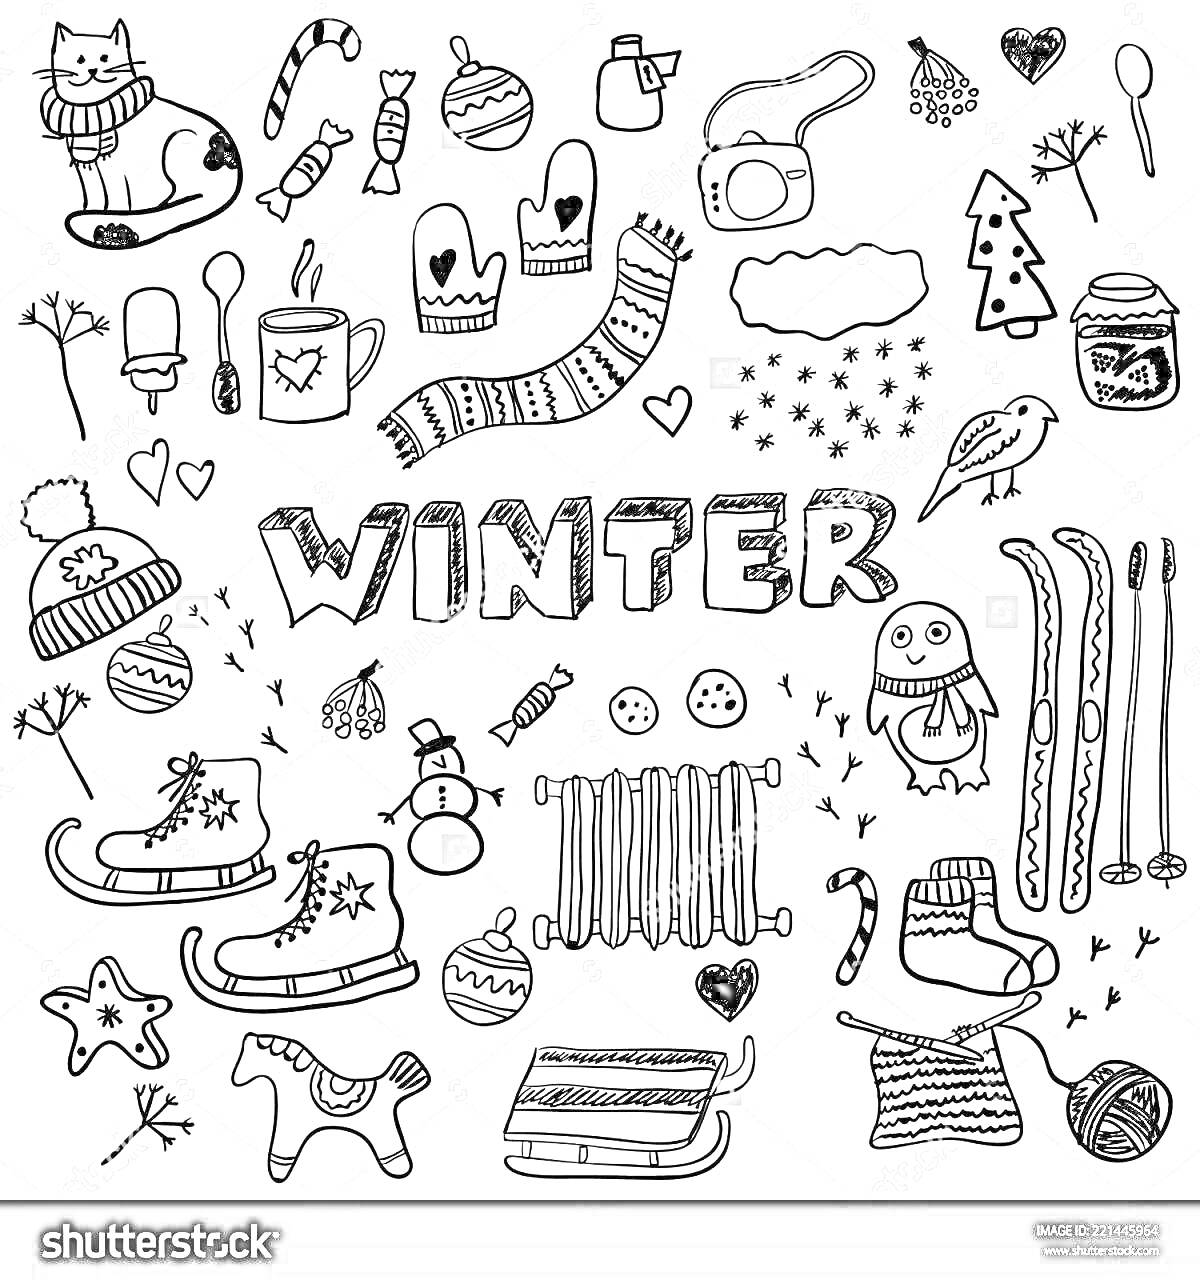 Раскраска Цветная раскраска наклеек для ежедневника с зимней тематикой. Элементы включают надпись 